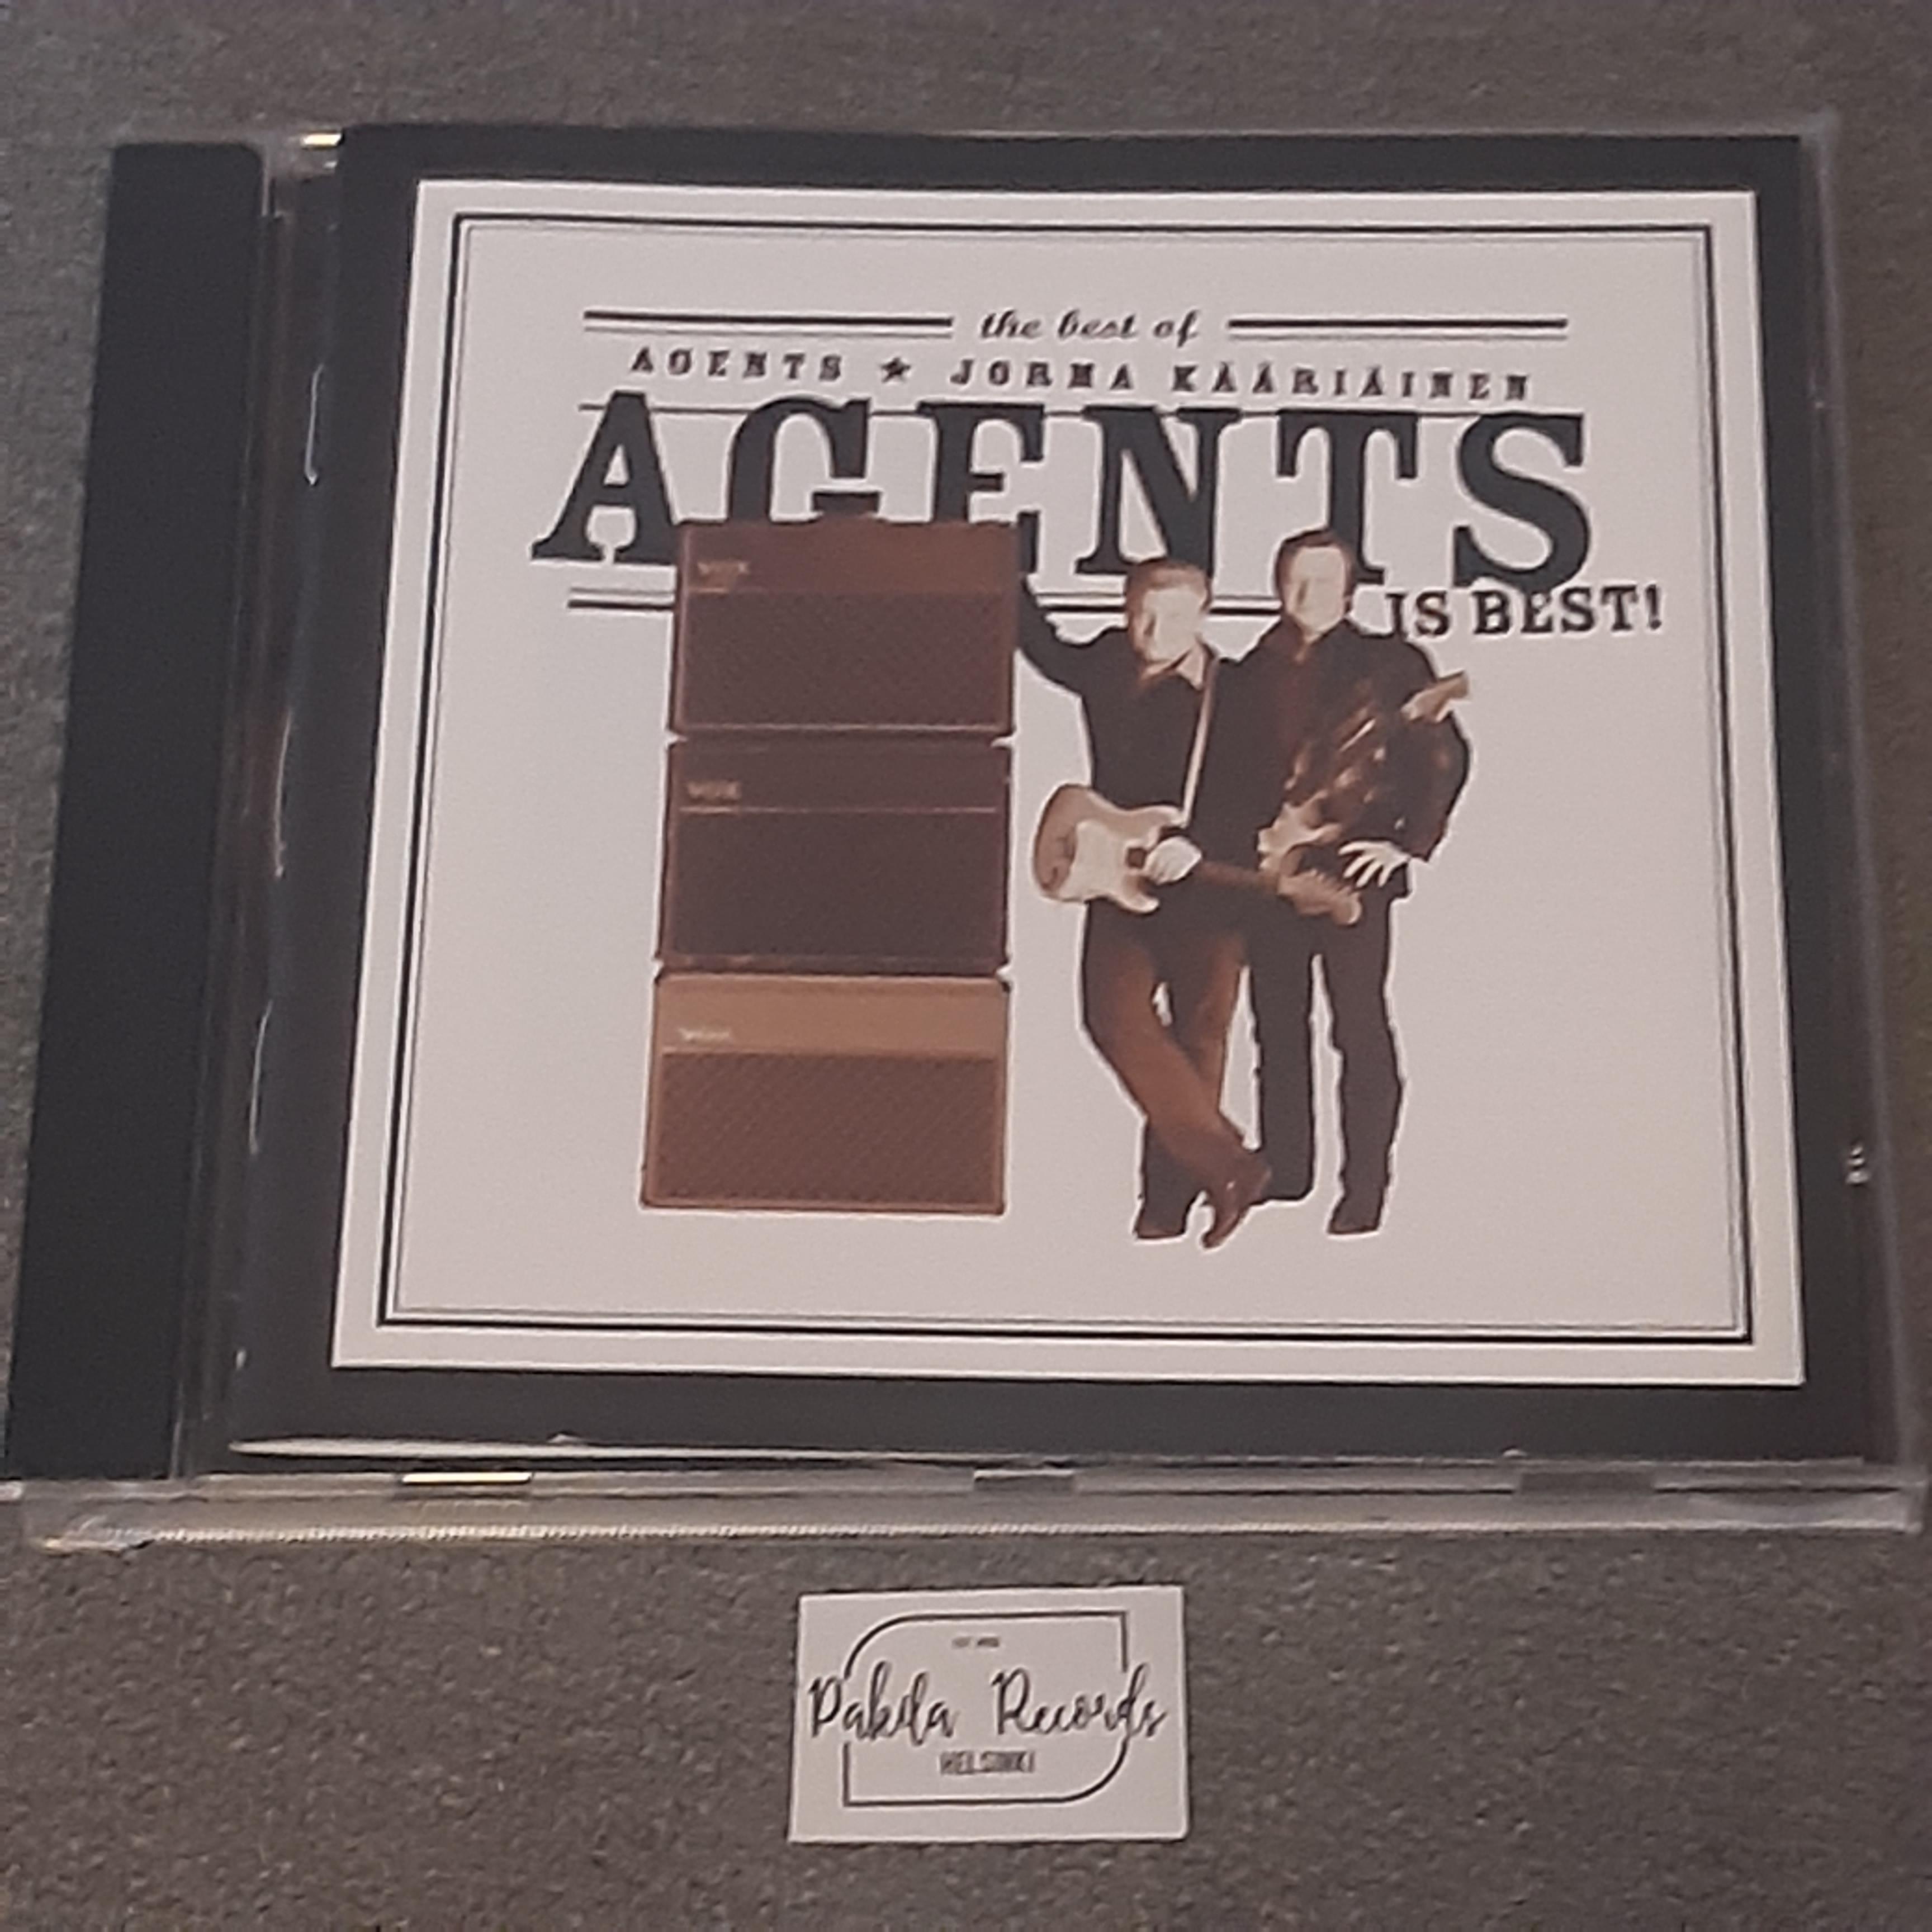 Agents & Jorma Kääriäinen - Is Best! - CD (käytetty)